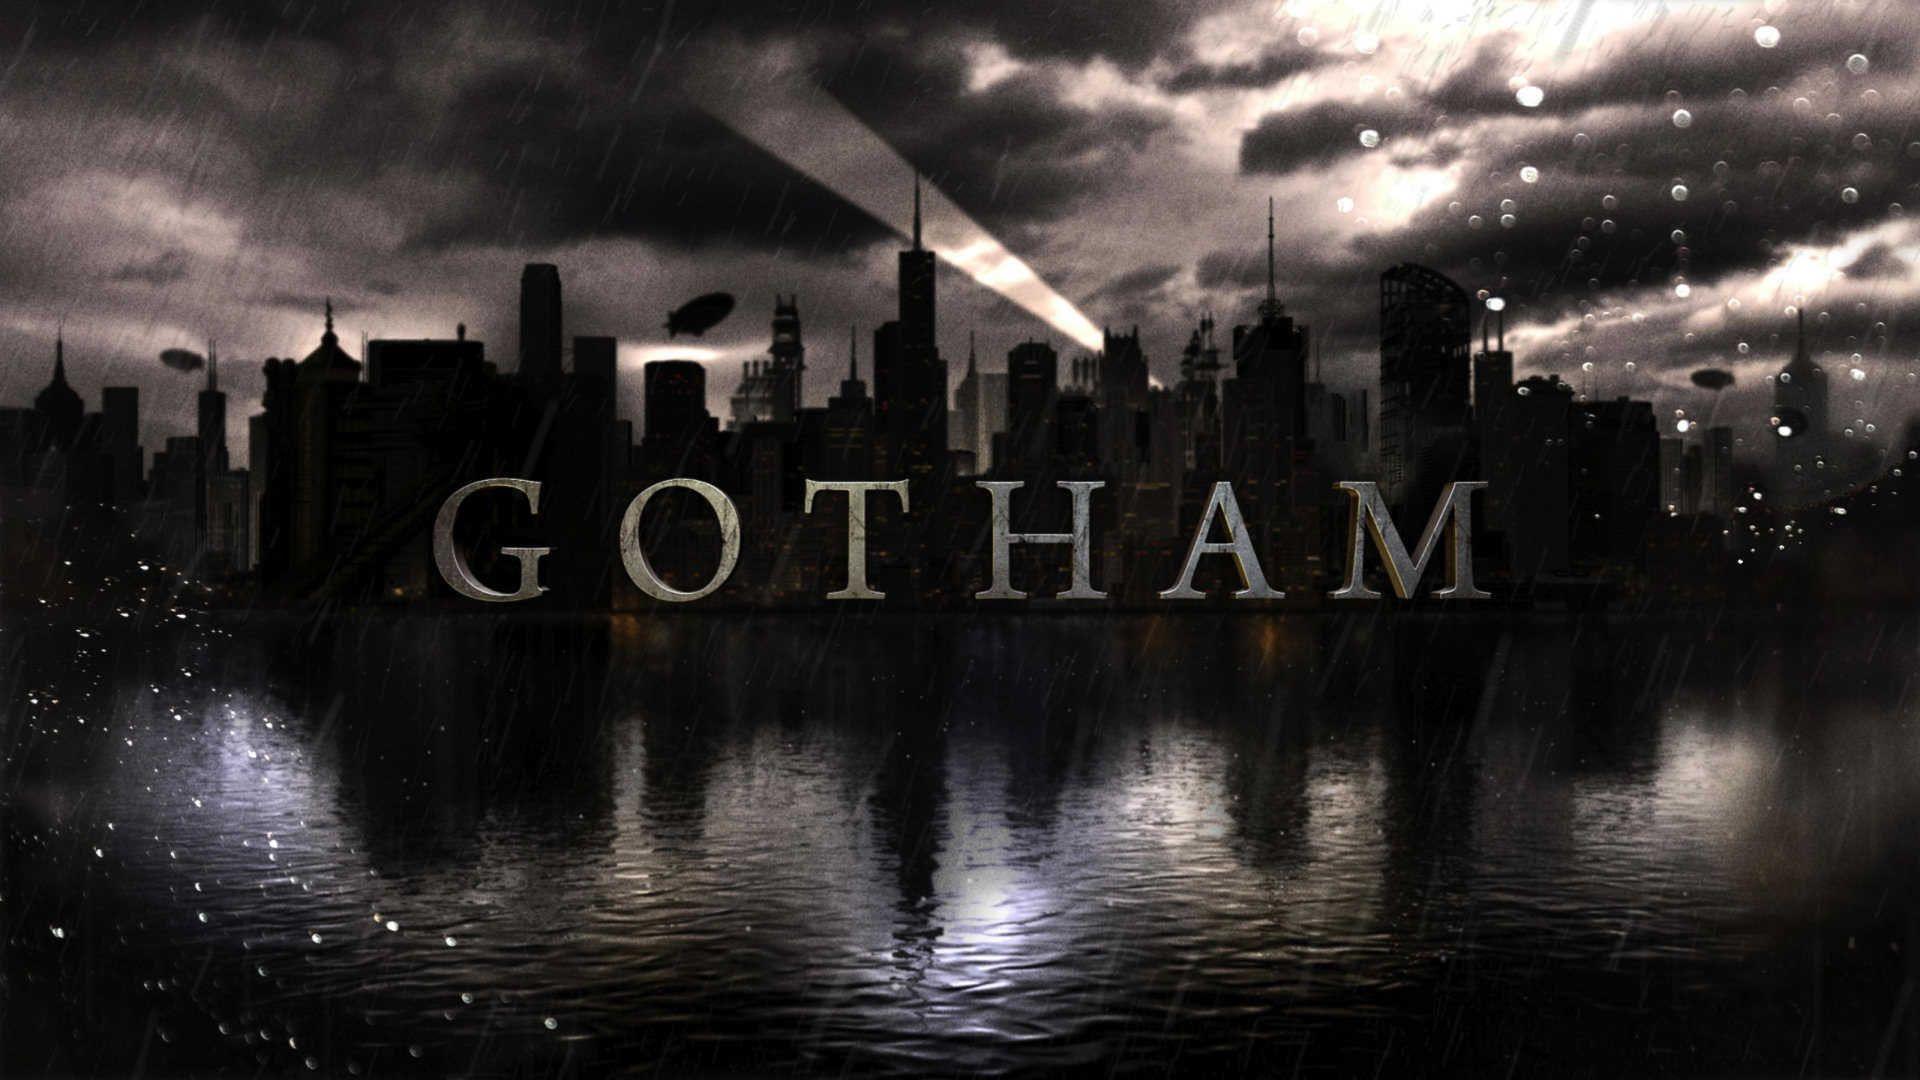 Gotham City By Night HD 16 9